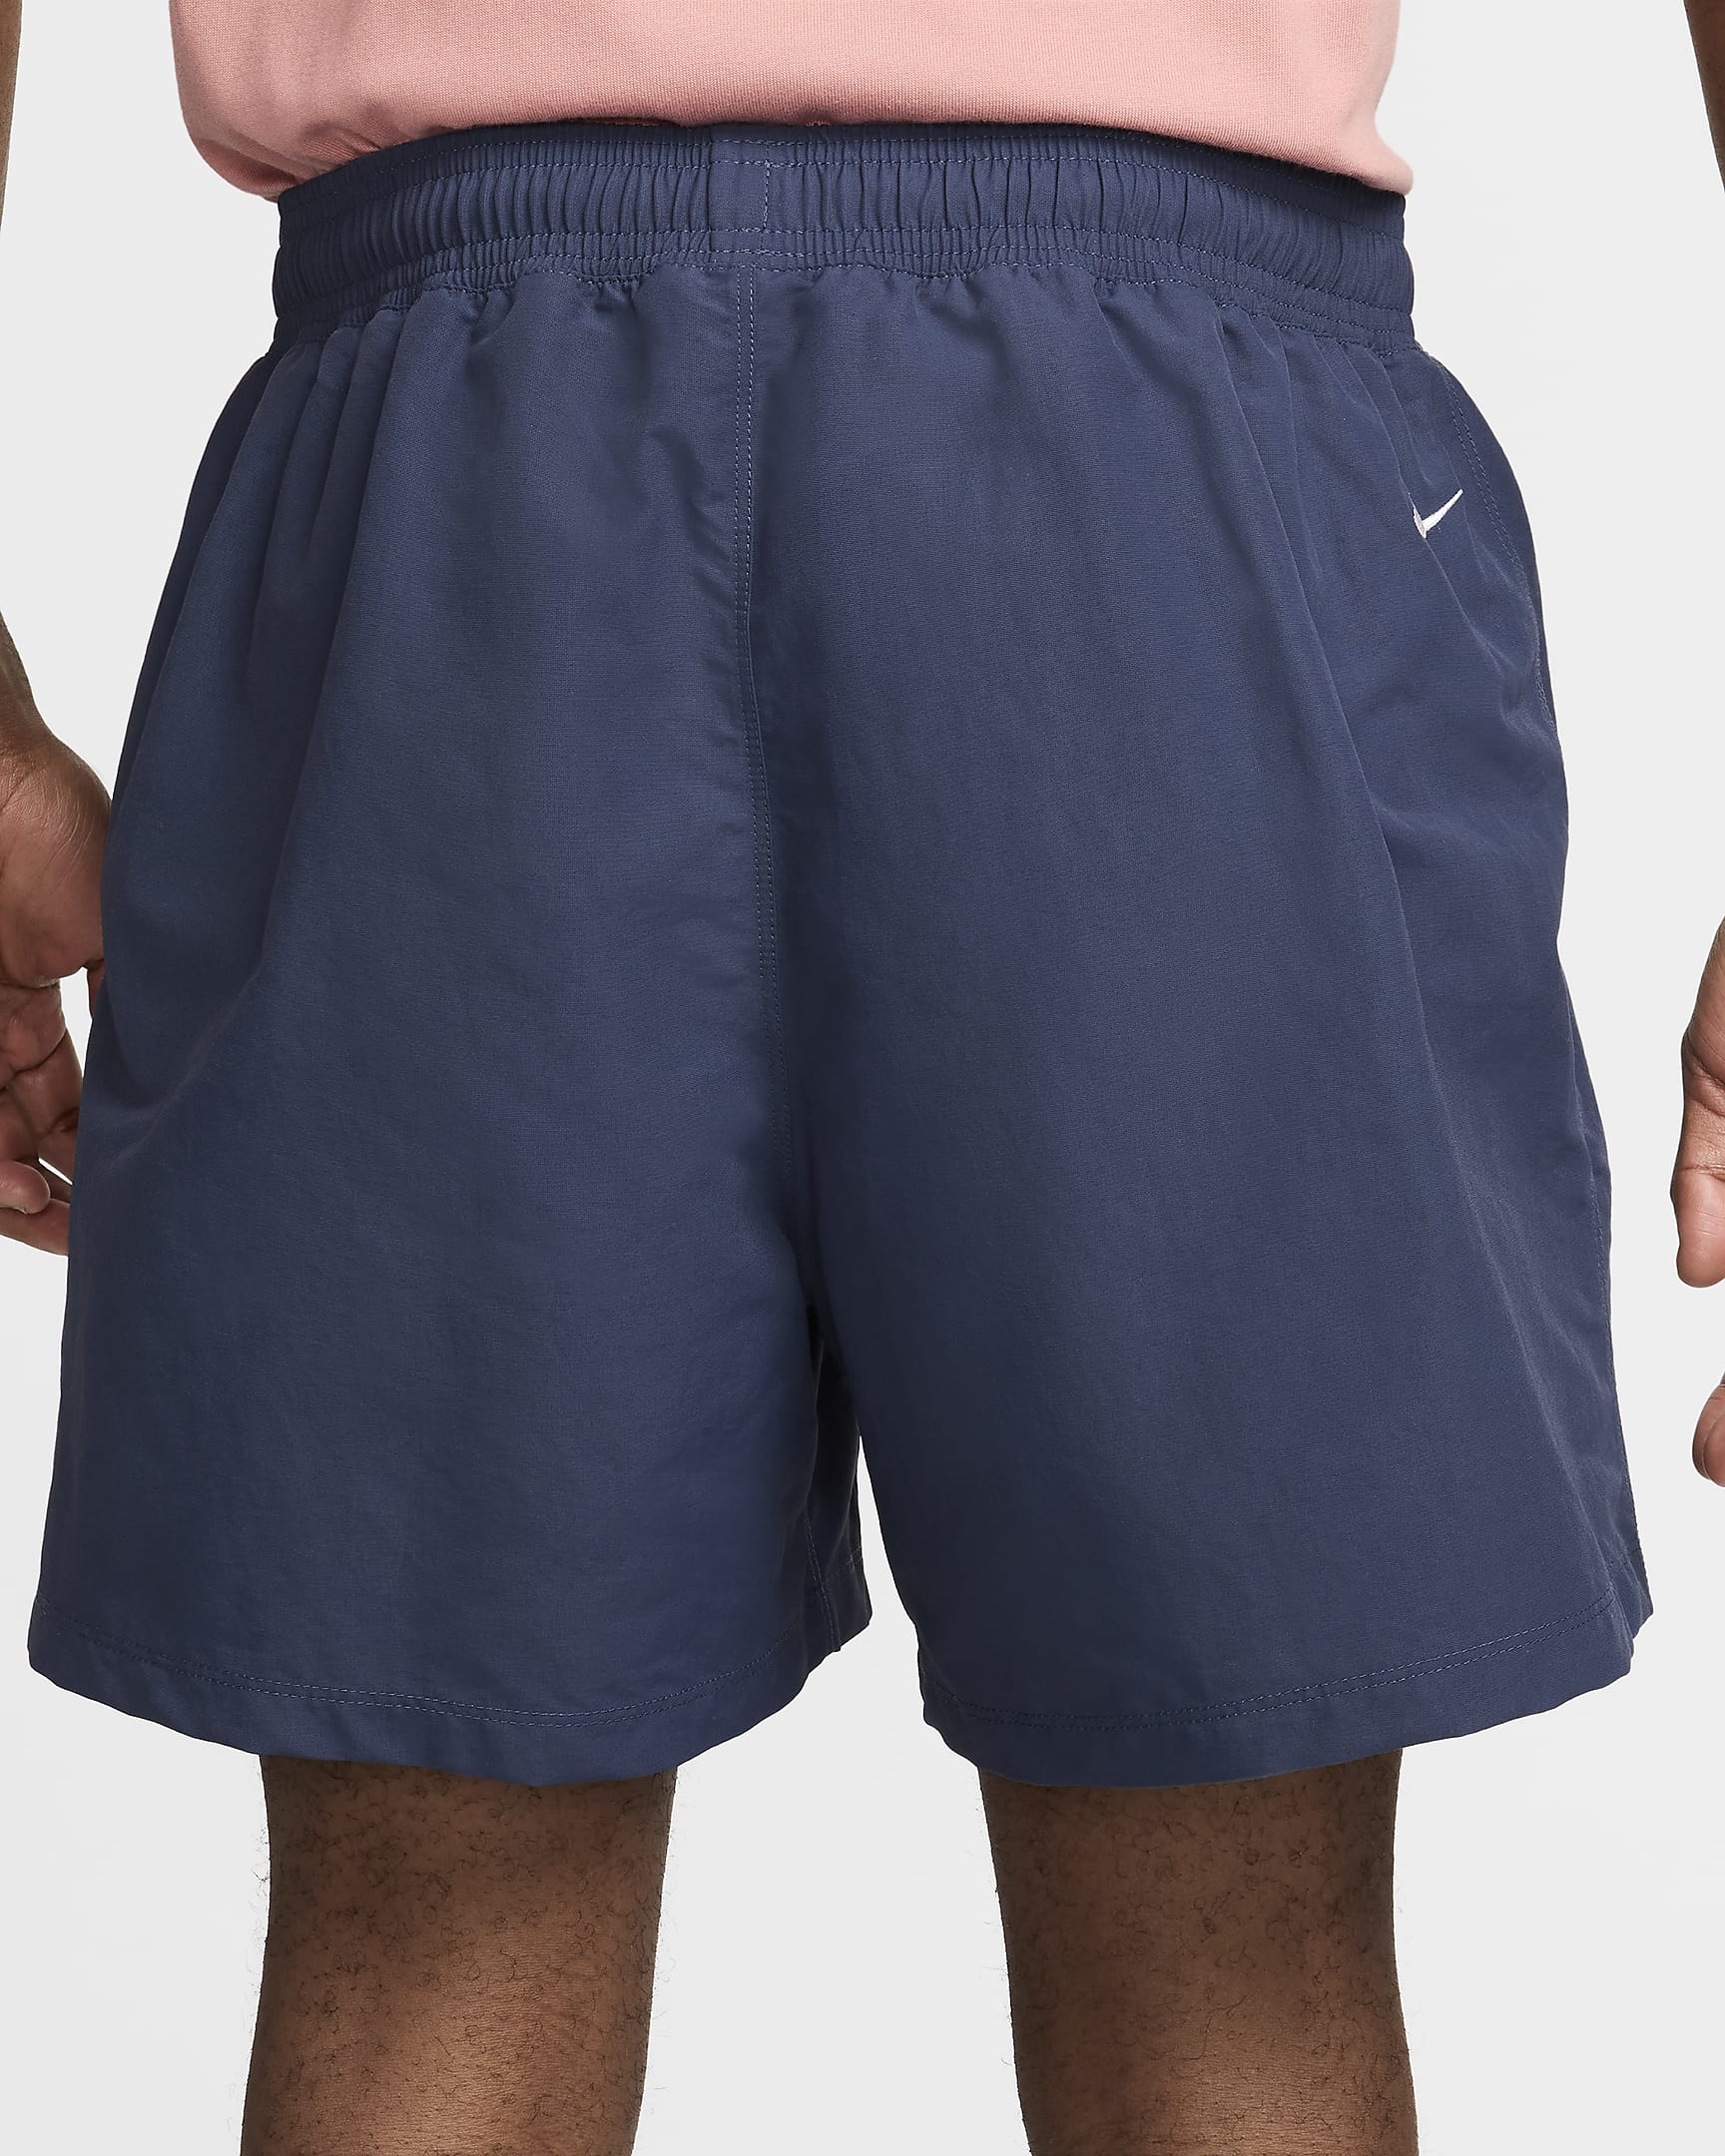 Nike ACG "Reservoir Goat" Men's Shorts - Thunder Blue/Summit White